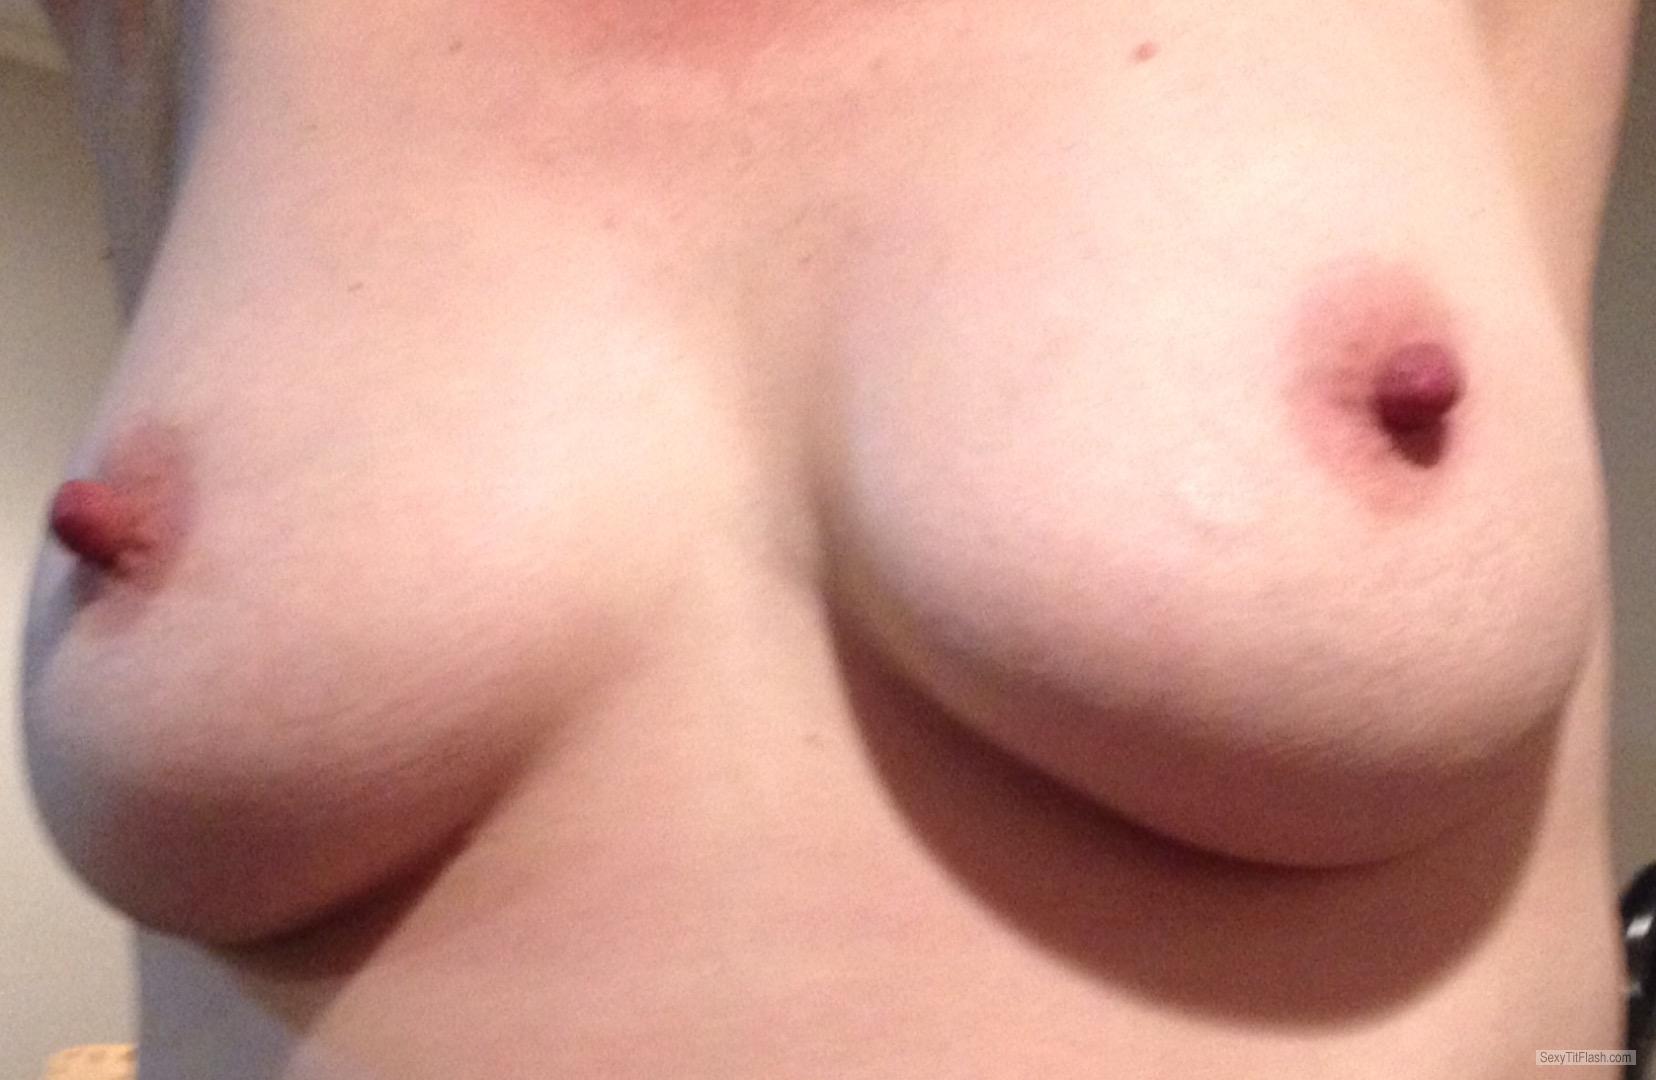 Tit Flash: My Medium Tits - Topless Reelnice from United Kingdom